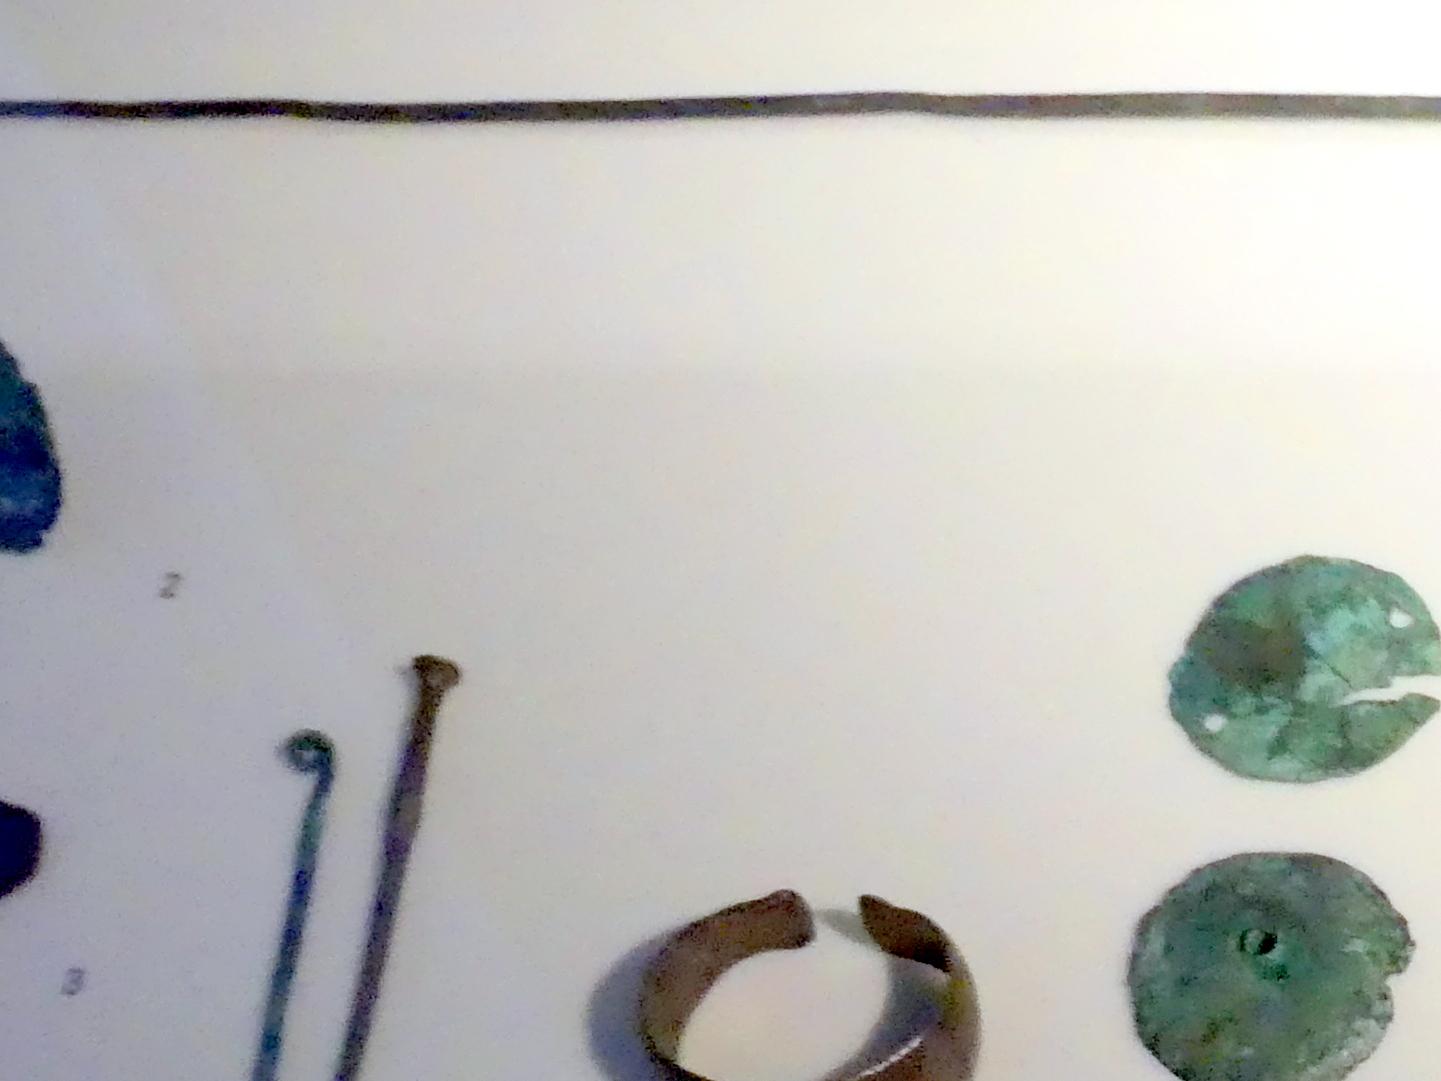 Nadel mit doppel-konischem Kopf und geripptem Hals, Mittlere Bronzezeit C, 1500 - 1300 v. Chr., 1500 - 1300 v. Chr., Bild 2/3